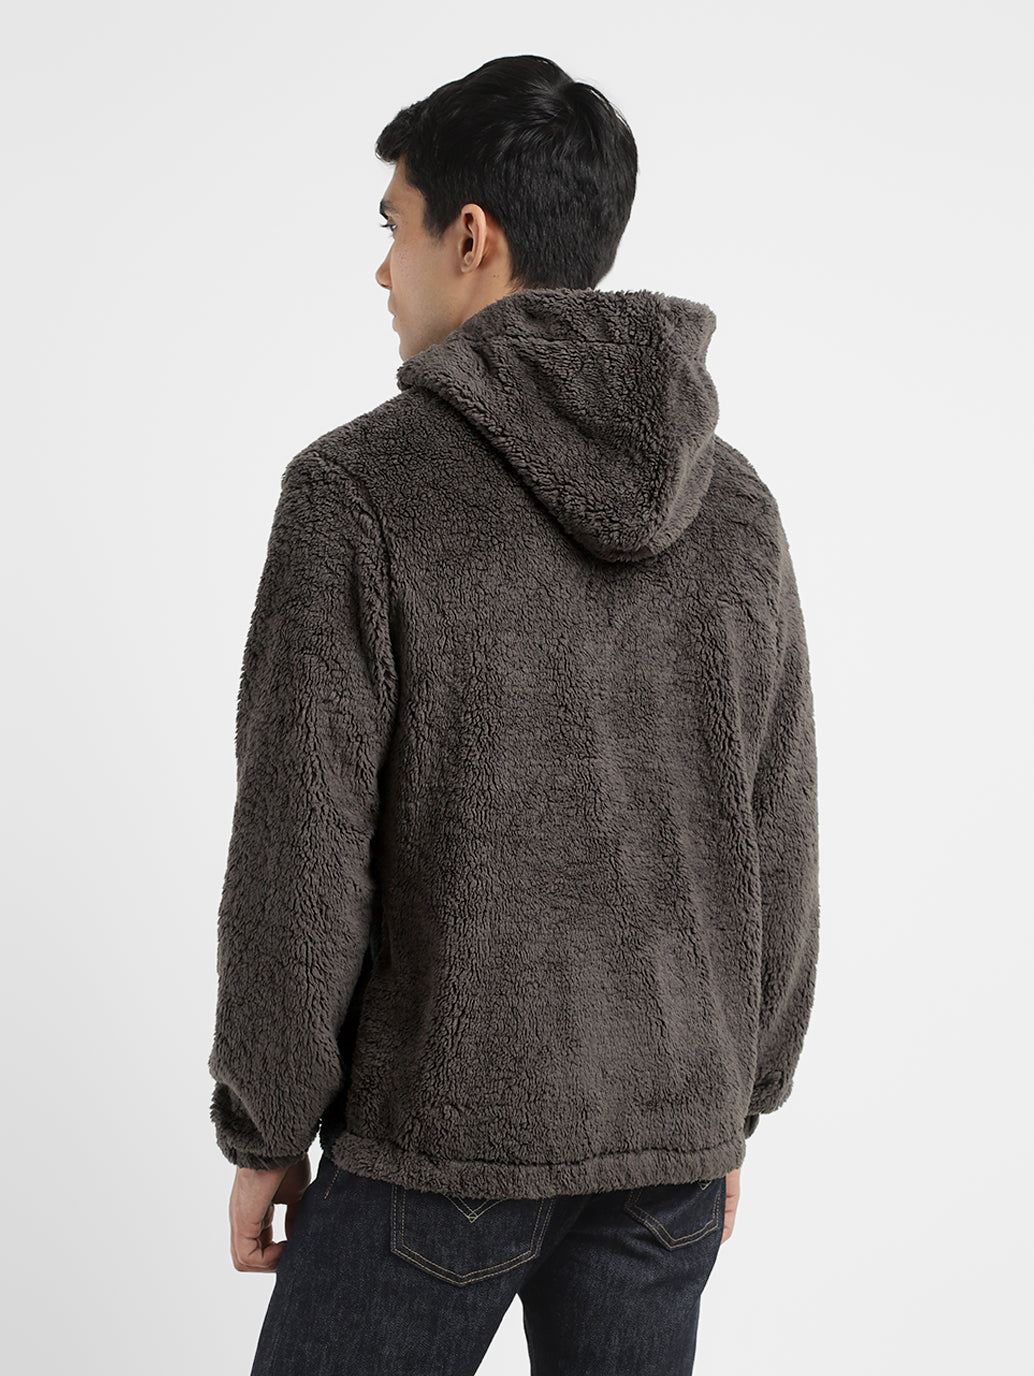 Men's Solid Grey Hooded Sweatshirt